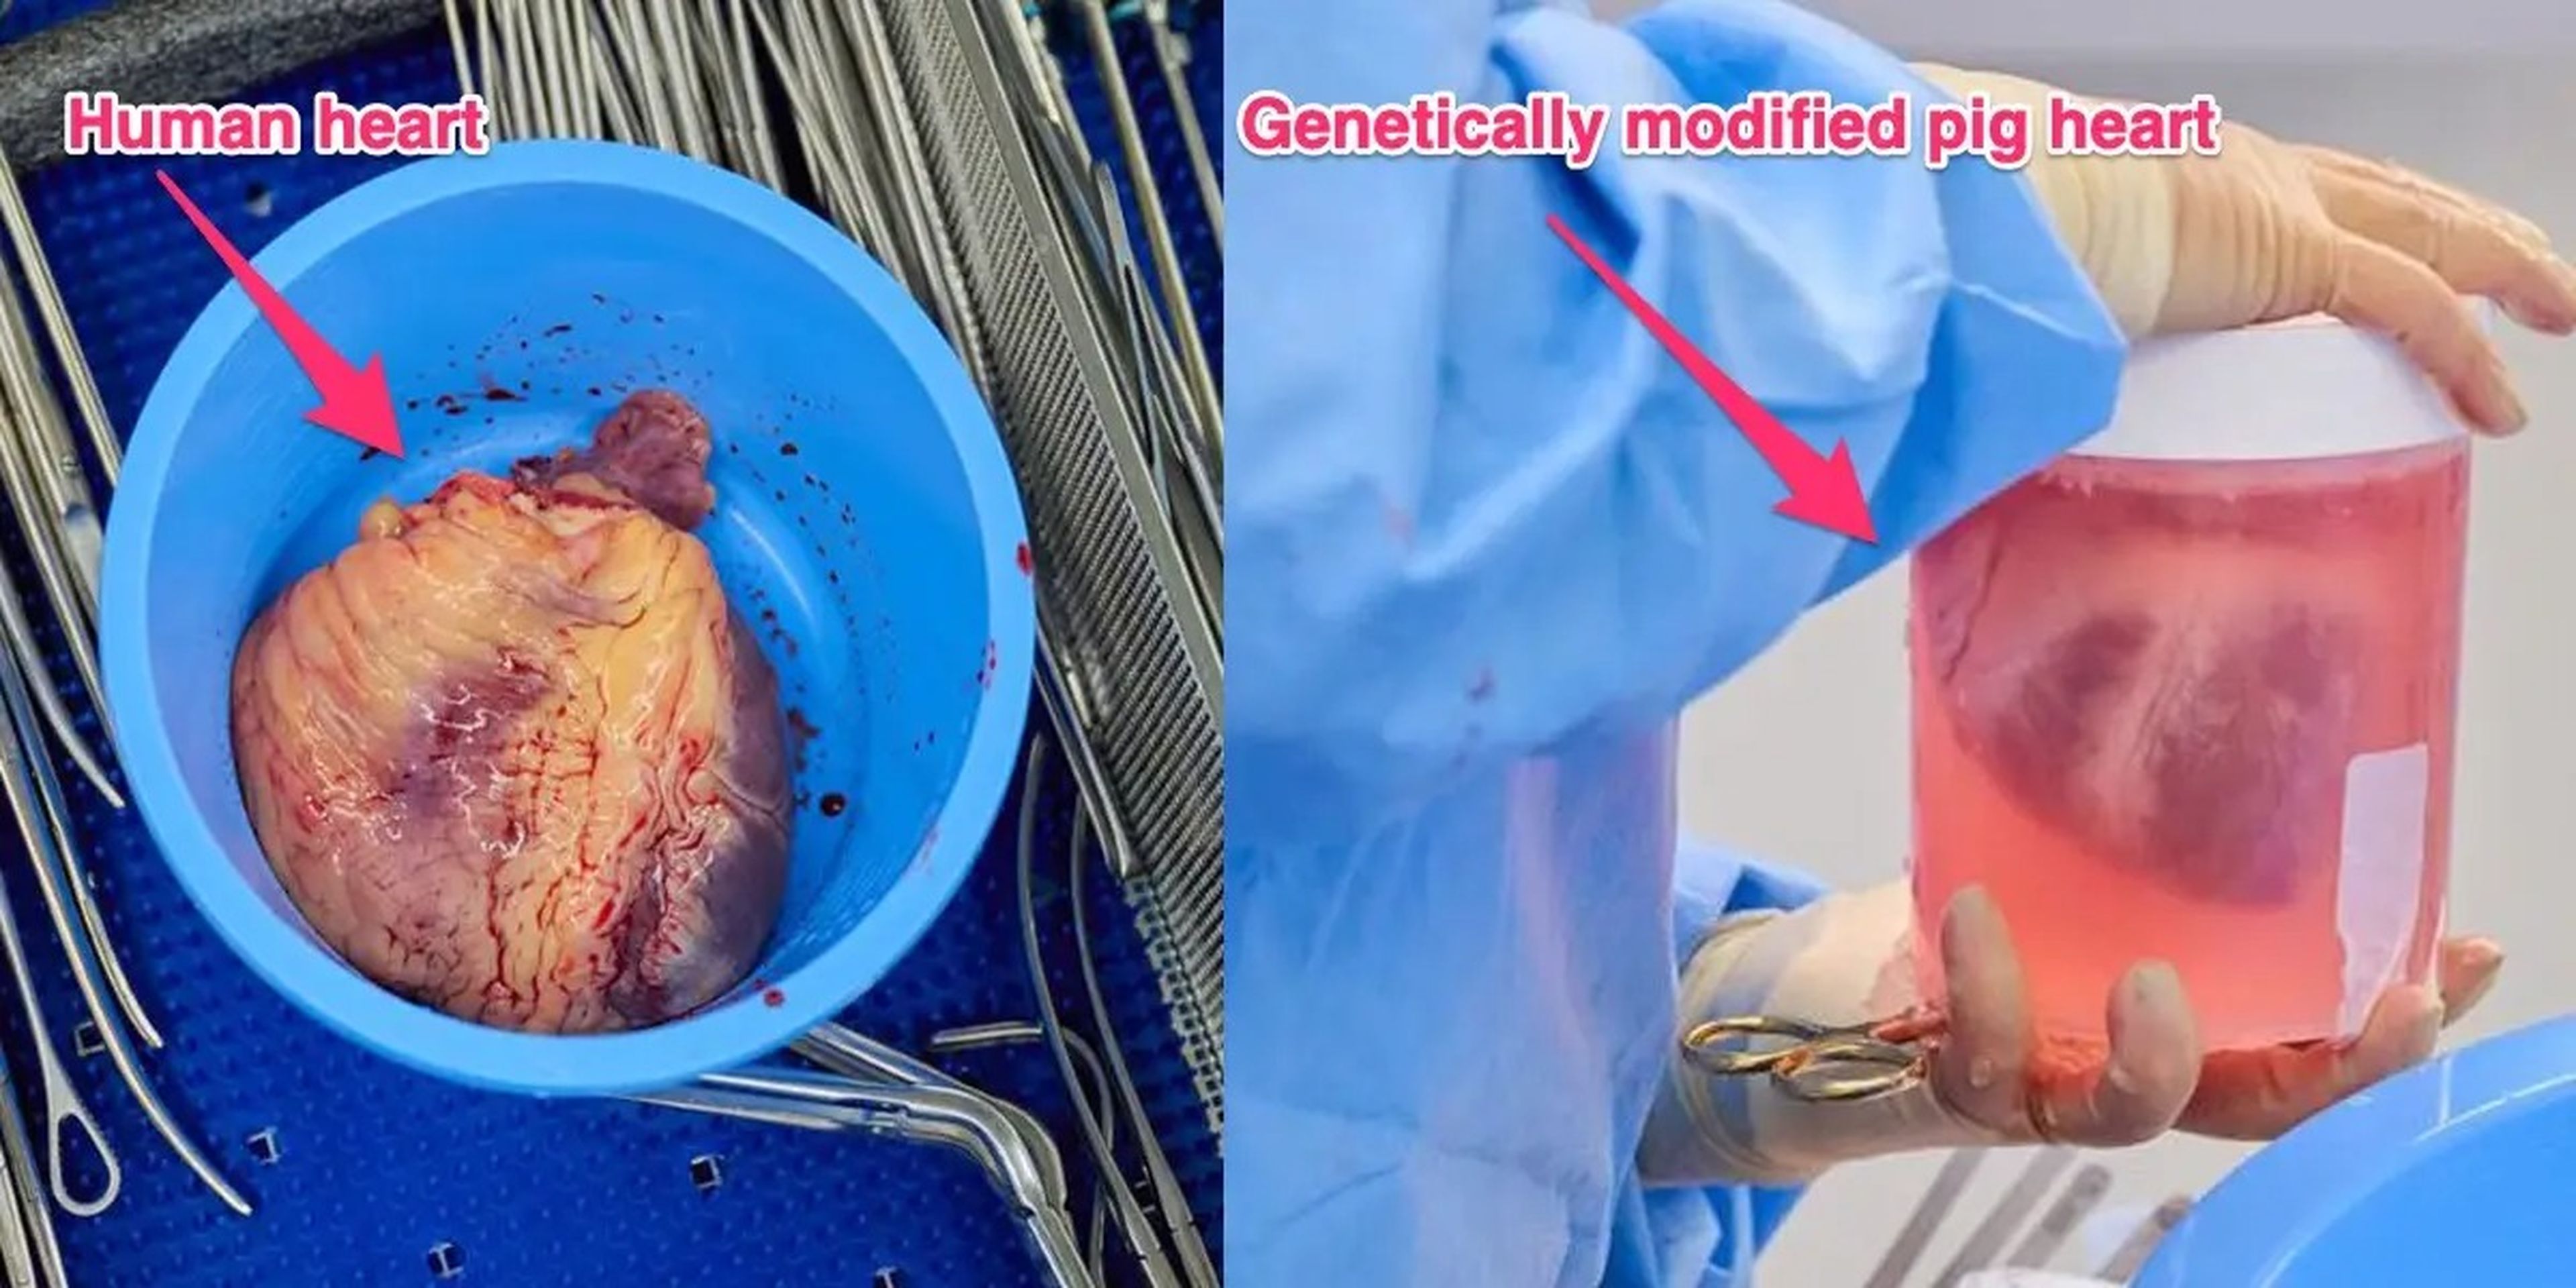 Un corazón humano después de la extracción, a la izquierda. Un corazón de cerdo modificado genéticamente para trasplante humano, a la derecha.